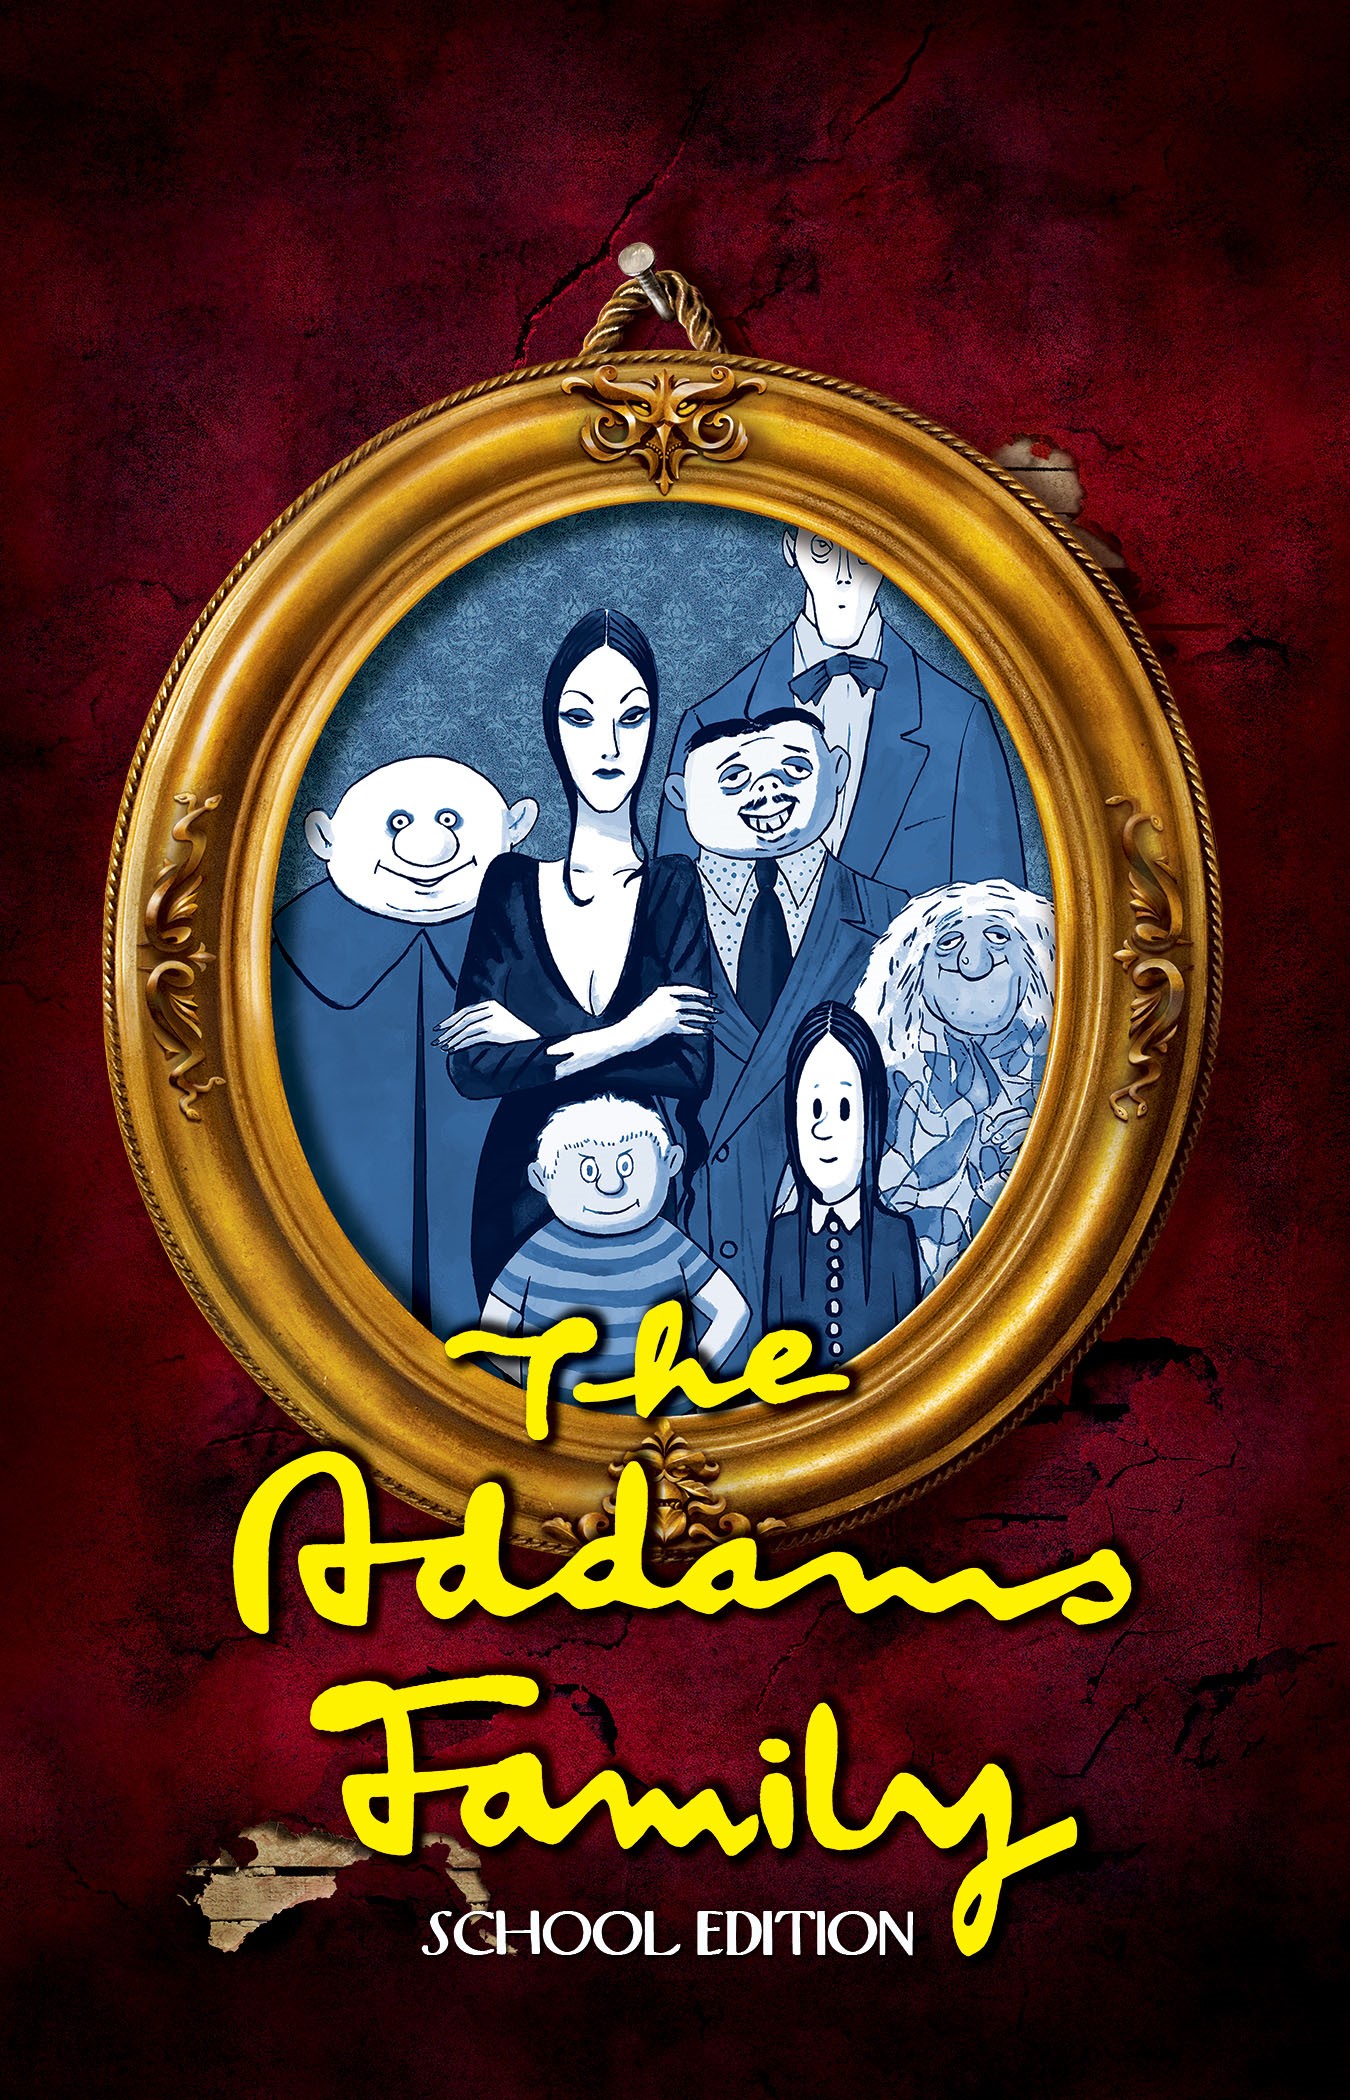 Addams Family  on juil. 11, 00:00@Clarksville Fine Arts Center - Choisissez un siège,Achetez des billets et obtenez des informations surClarksville Community Players, clarksvilleplayers.org